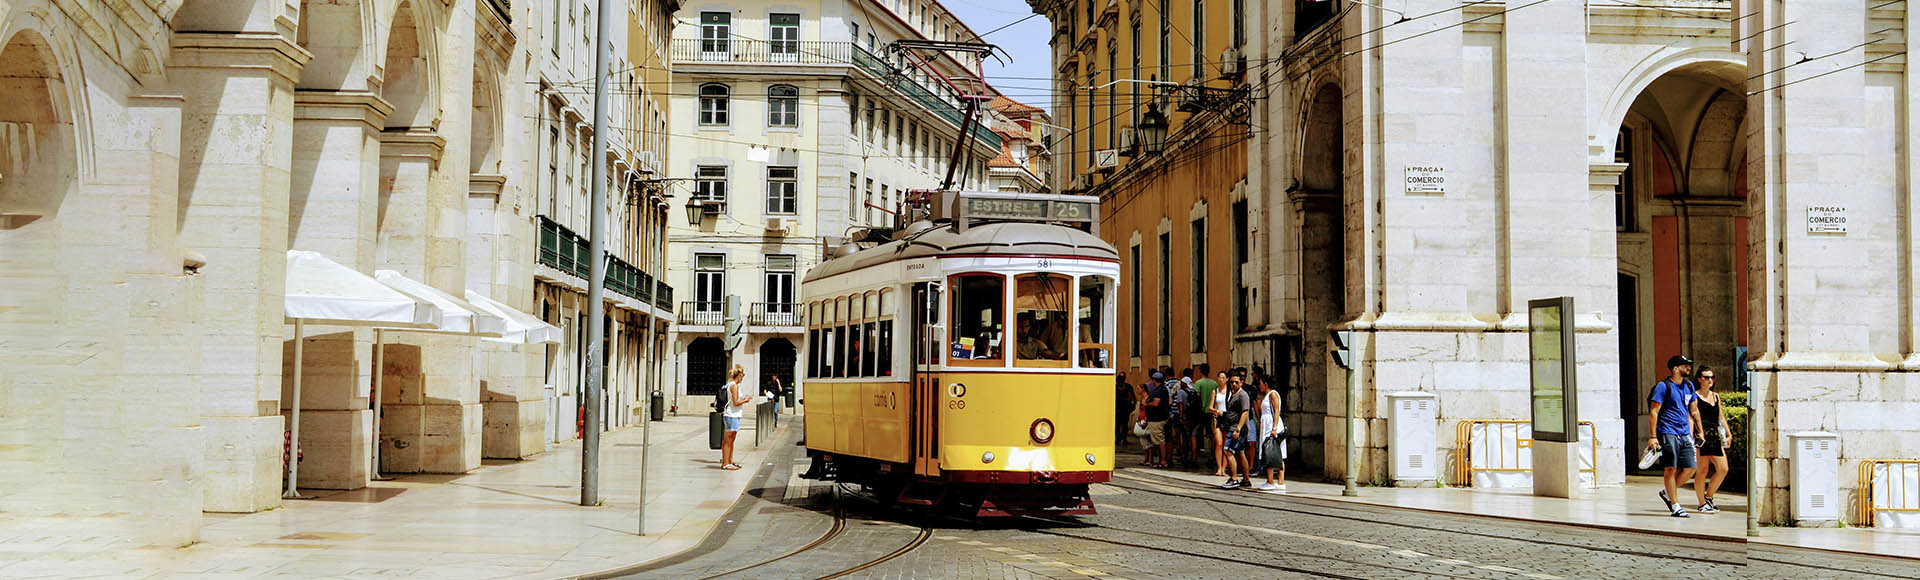 Lisboa-Porto